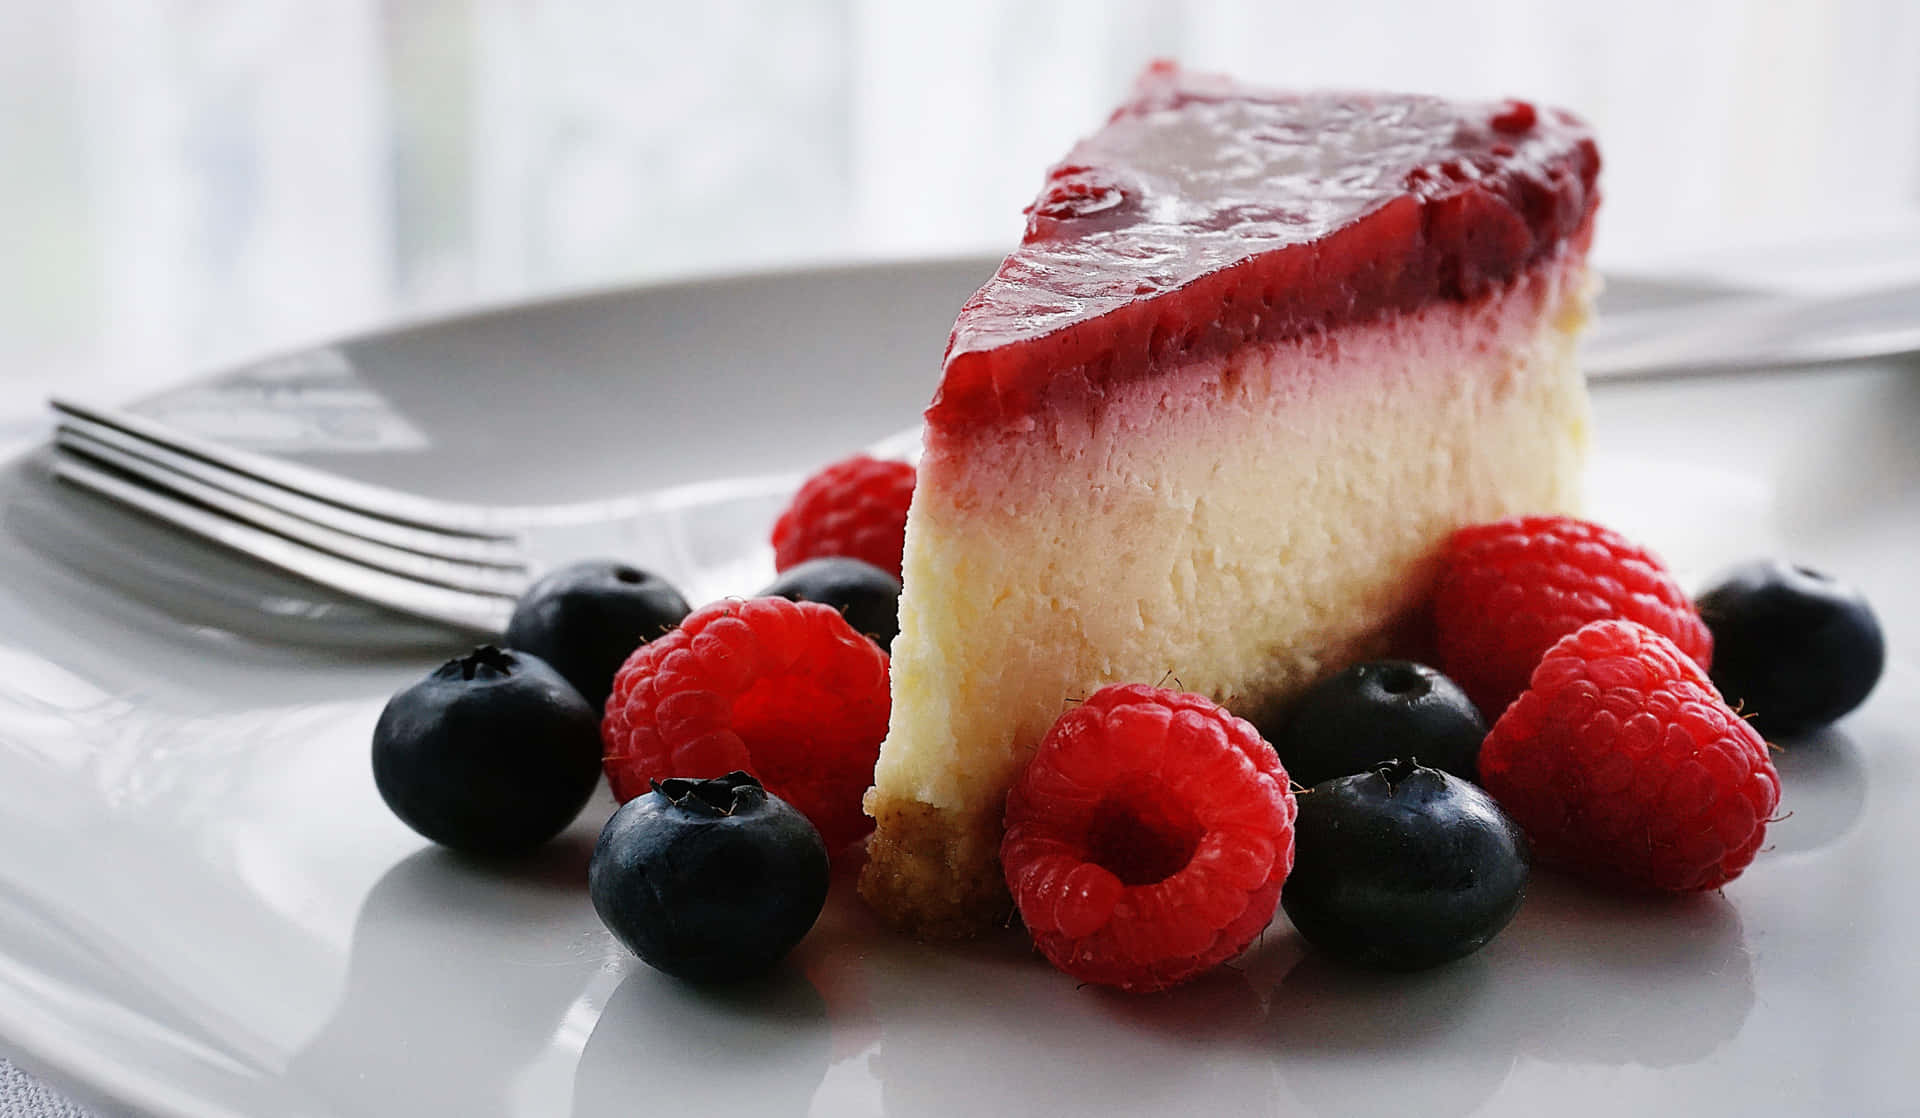 Bestehintergrundbilder Für Desserts - Rosa Torte